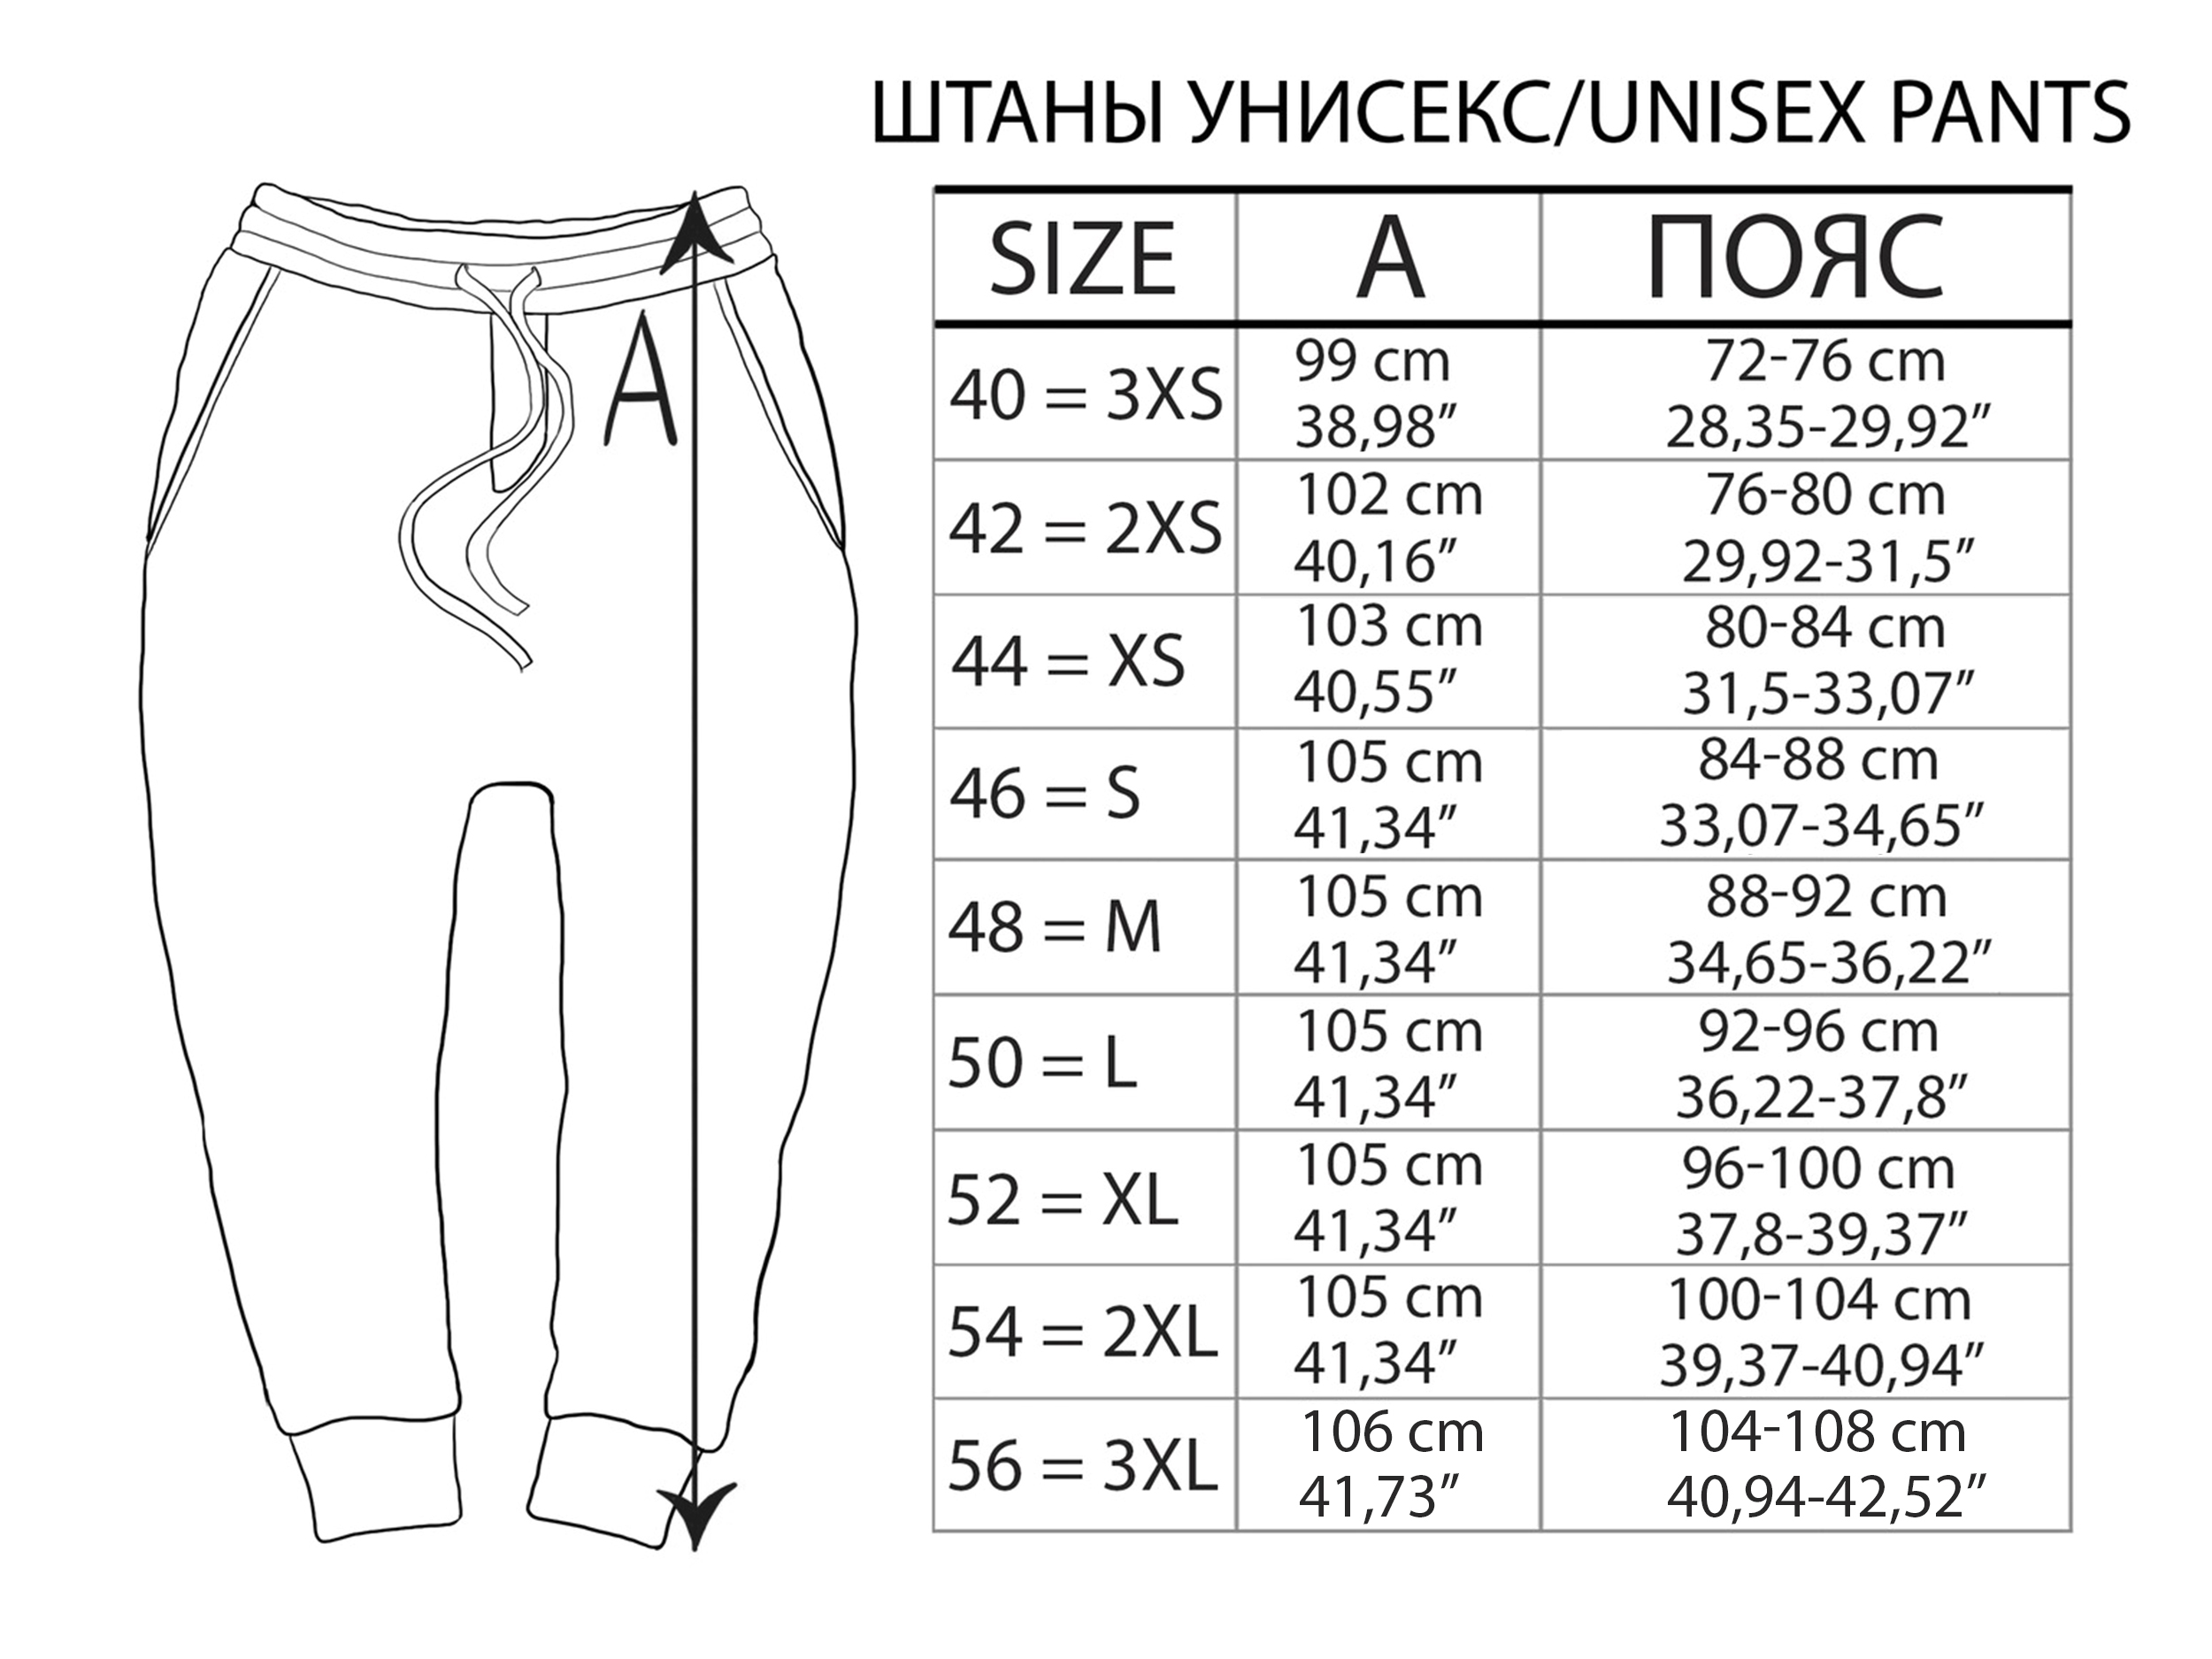 Размеры штанов россия. Размеры штанов мужских 42 размер. Размеры мужских брюк в сантиметрах. Размеры штанов на рост. Размеры штанов в см.